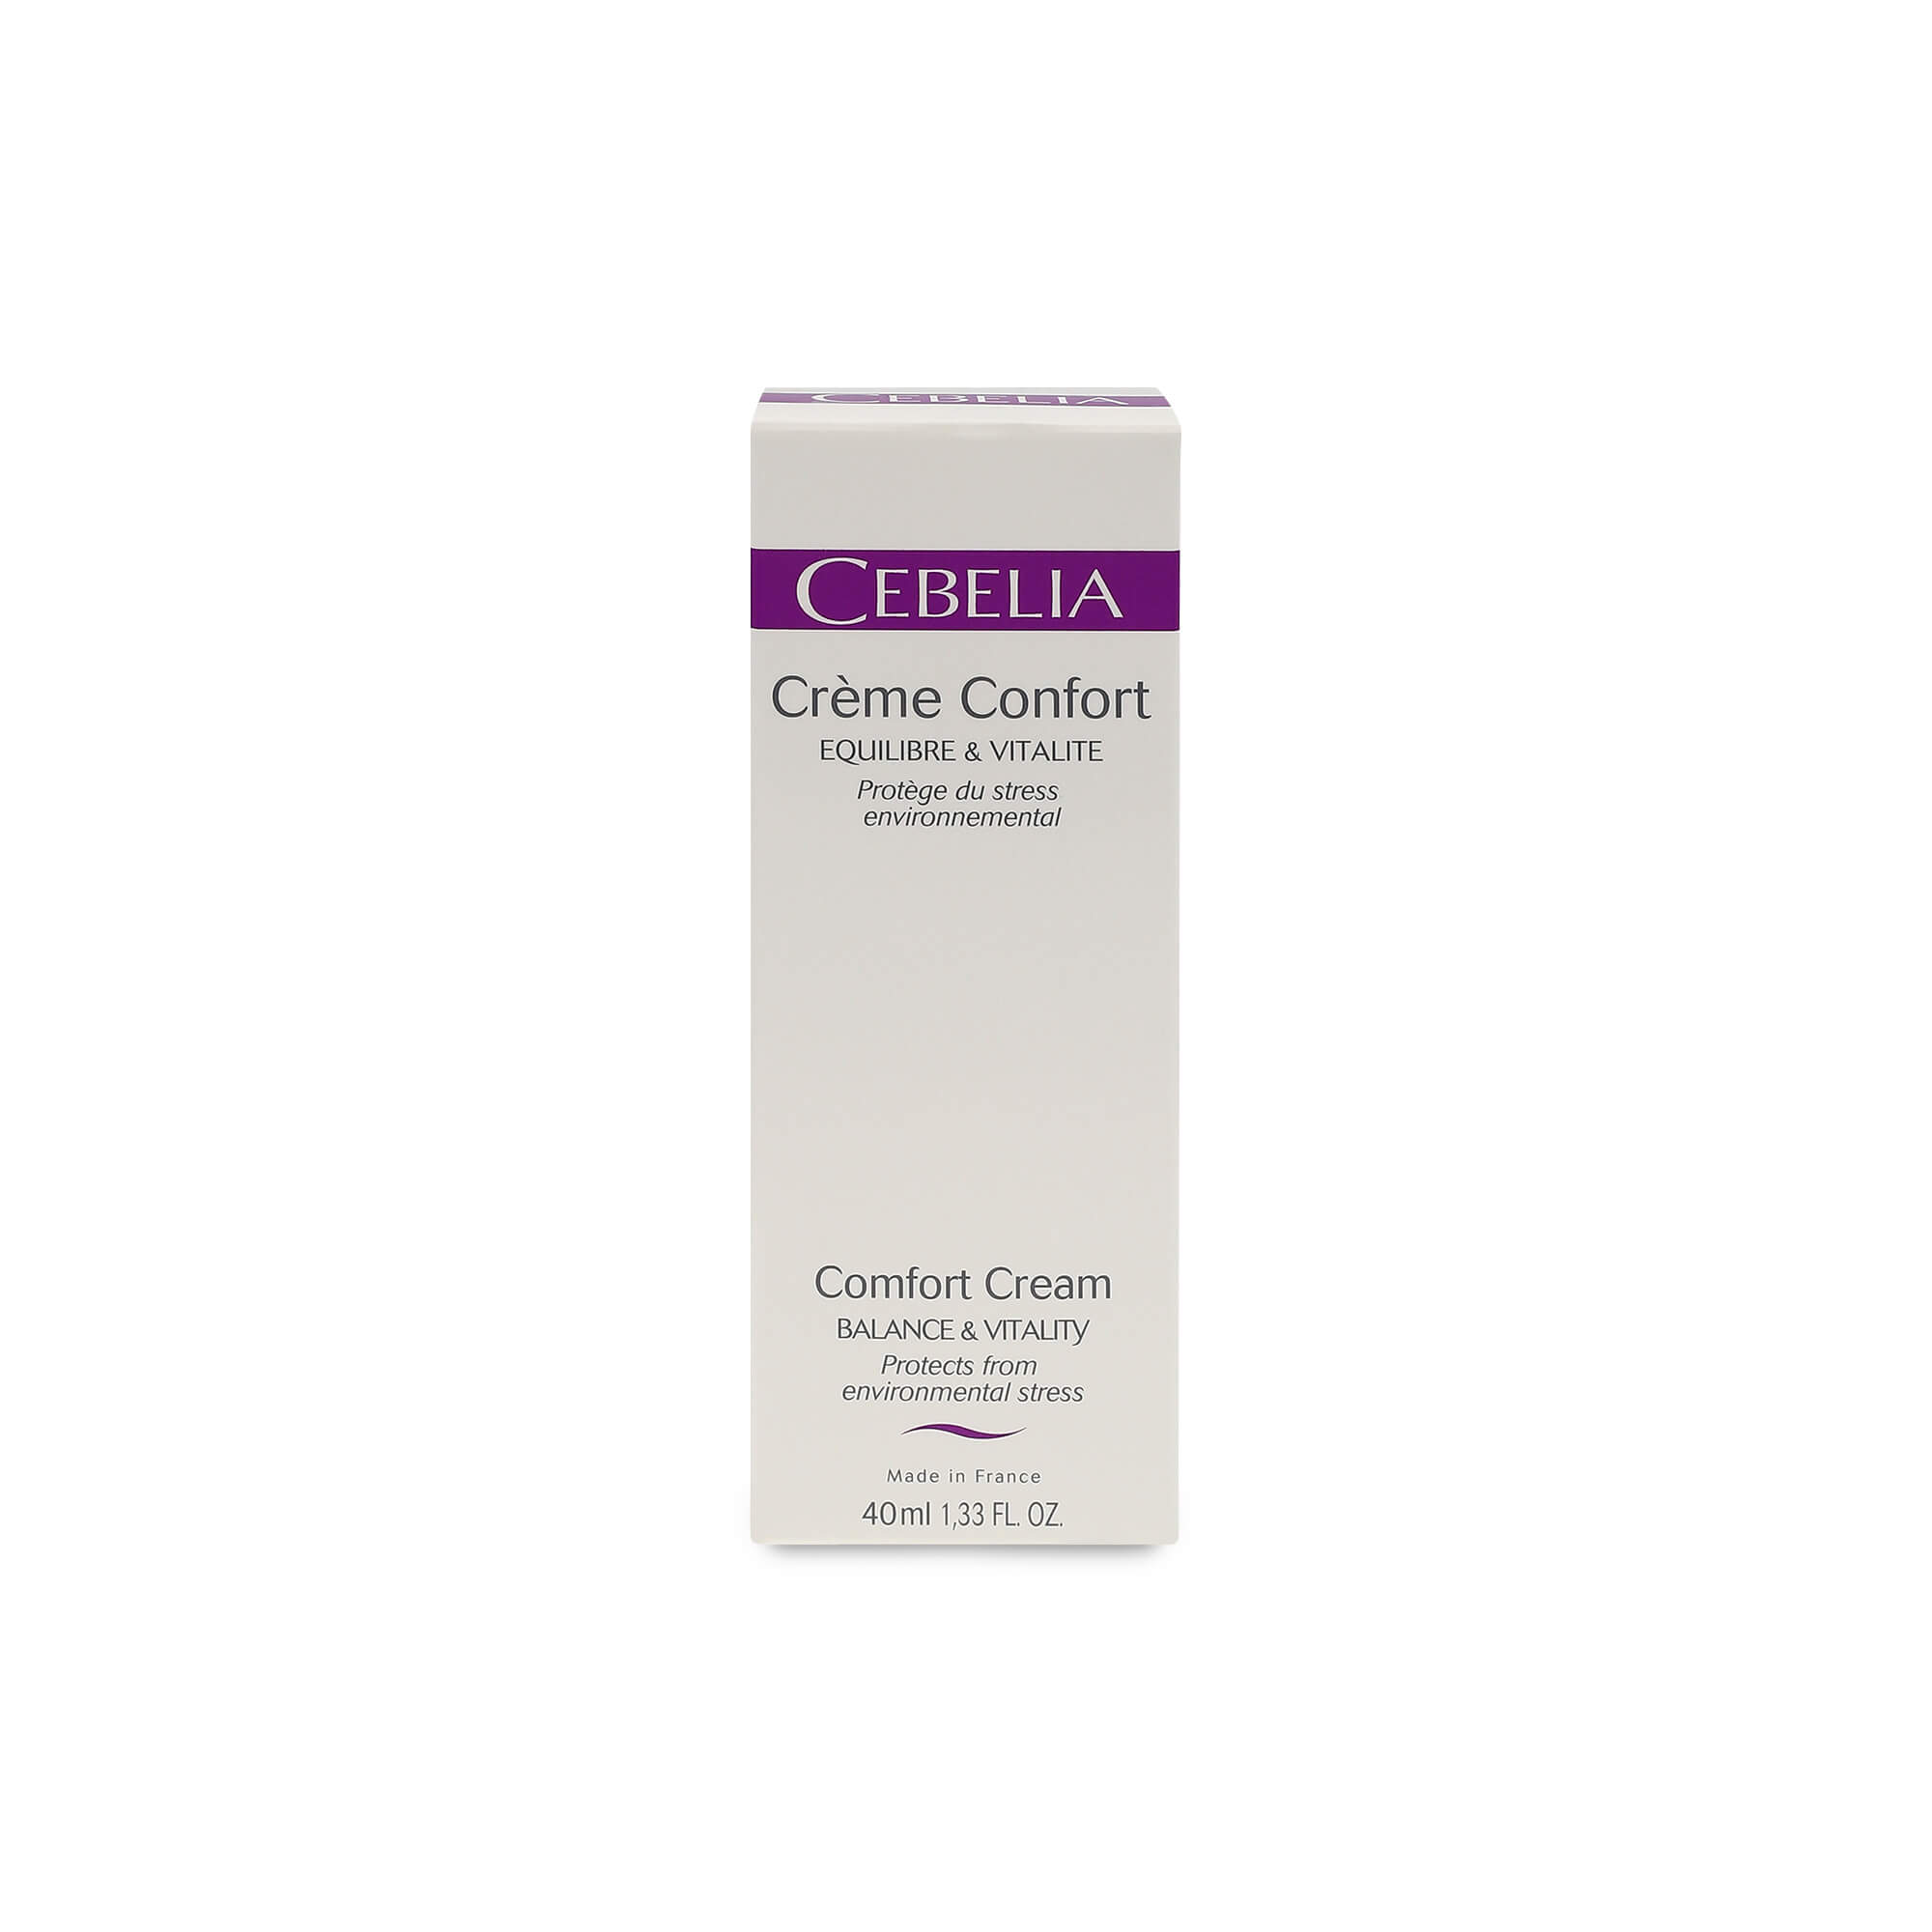 Cebelia Comfort Cream, balance and vitality